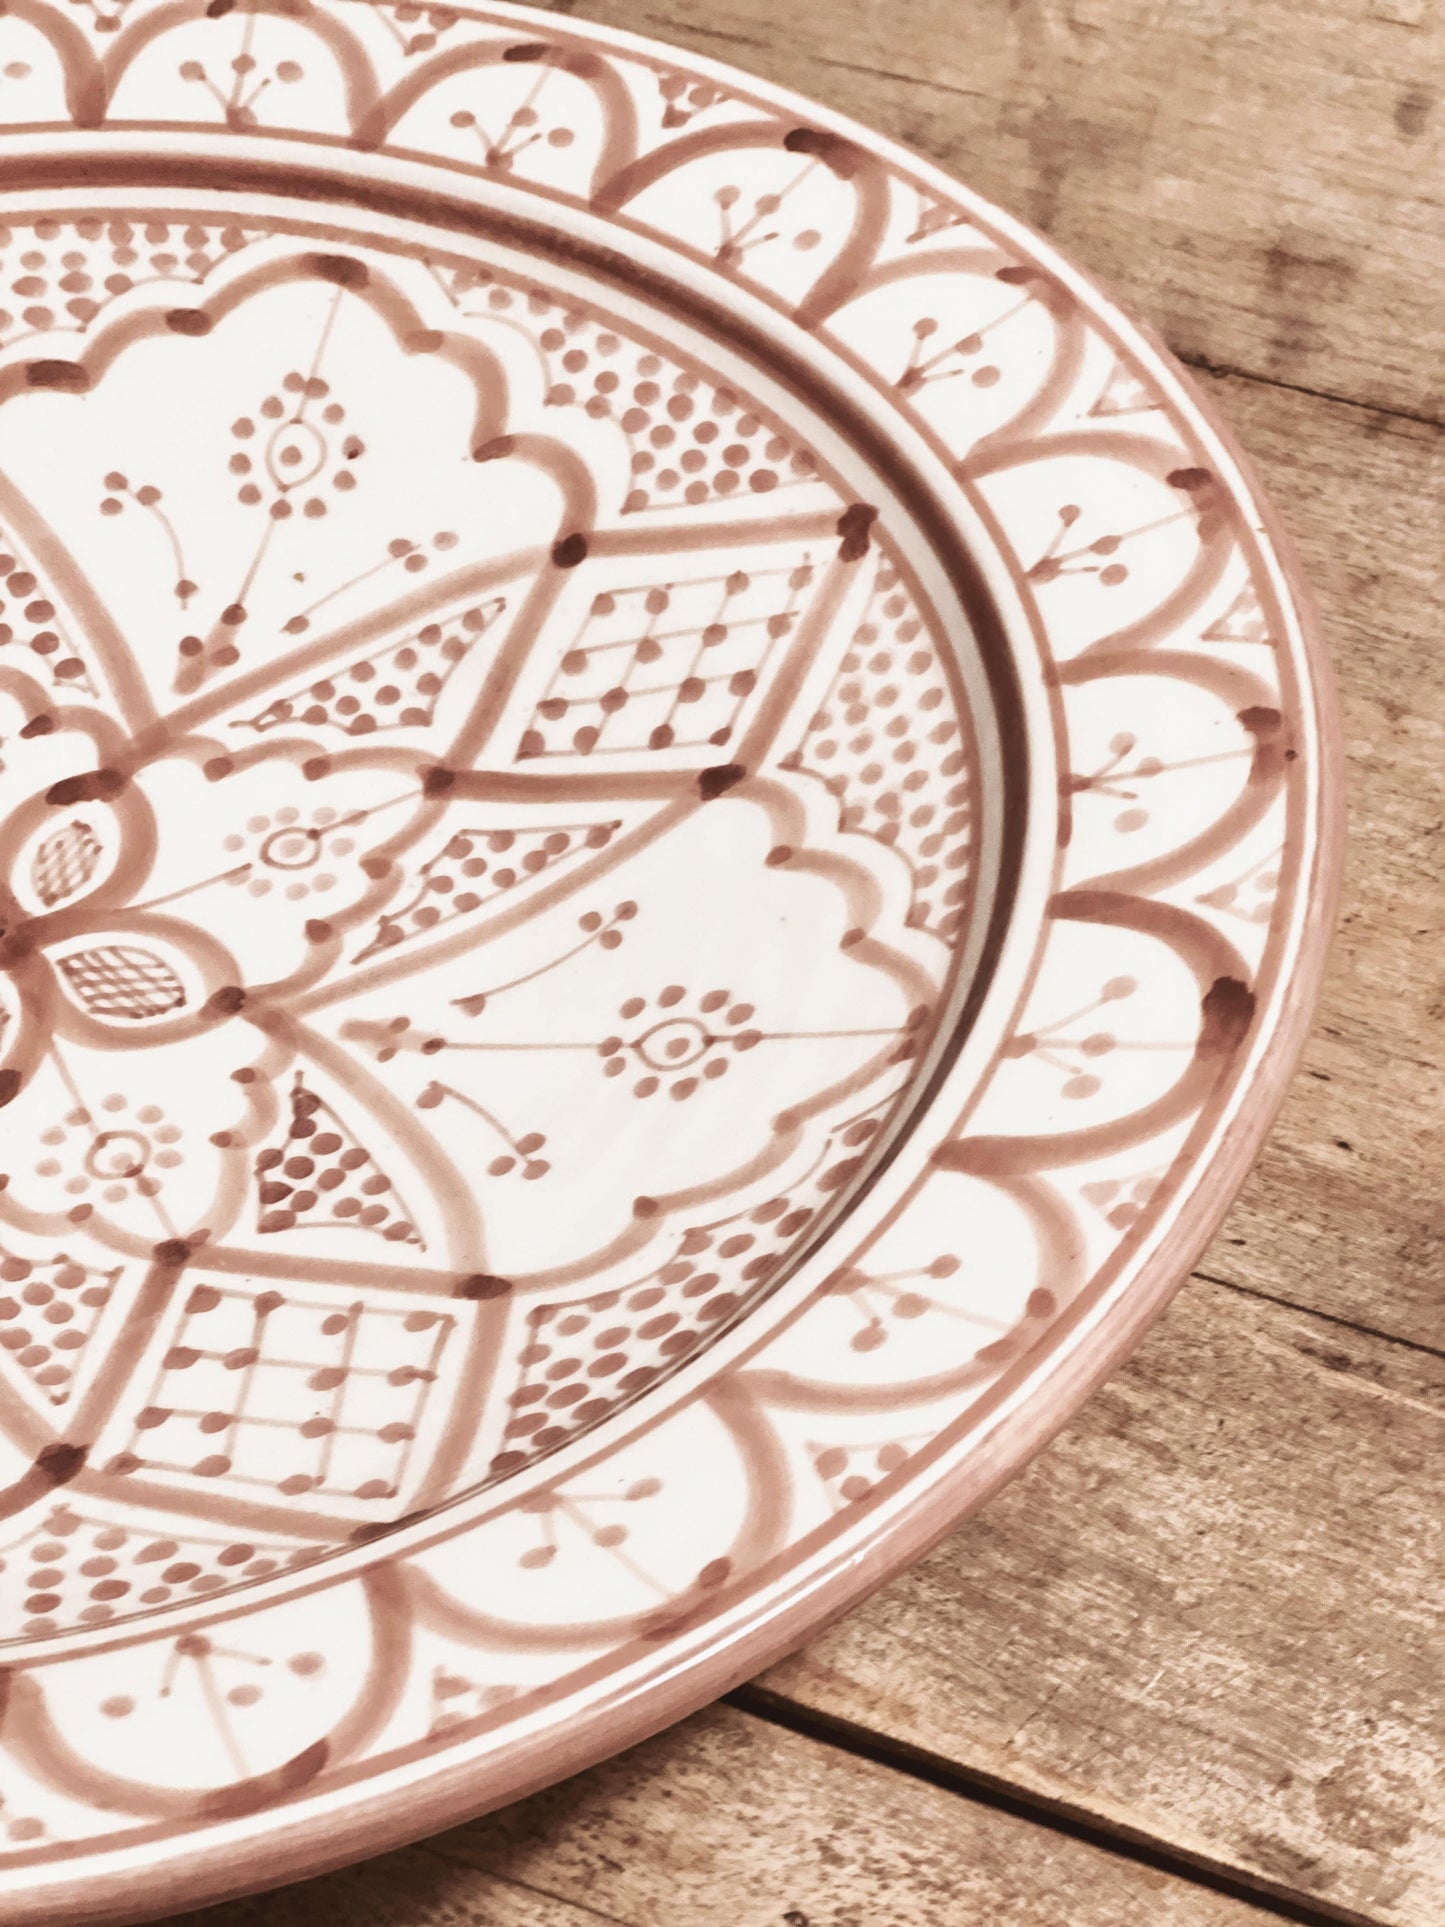 Nydelige detaljer på det vakre håndlagde og håndmalte fatet i keramikk fra Marokko med mønster i mocca.Server herlige måltider med dette unike fatet både hjemme og på hytta.Perfekt til salaten.